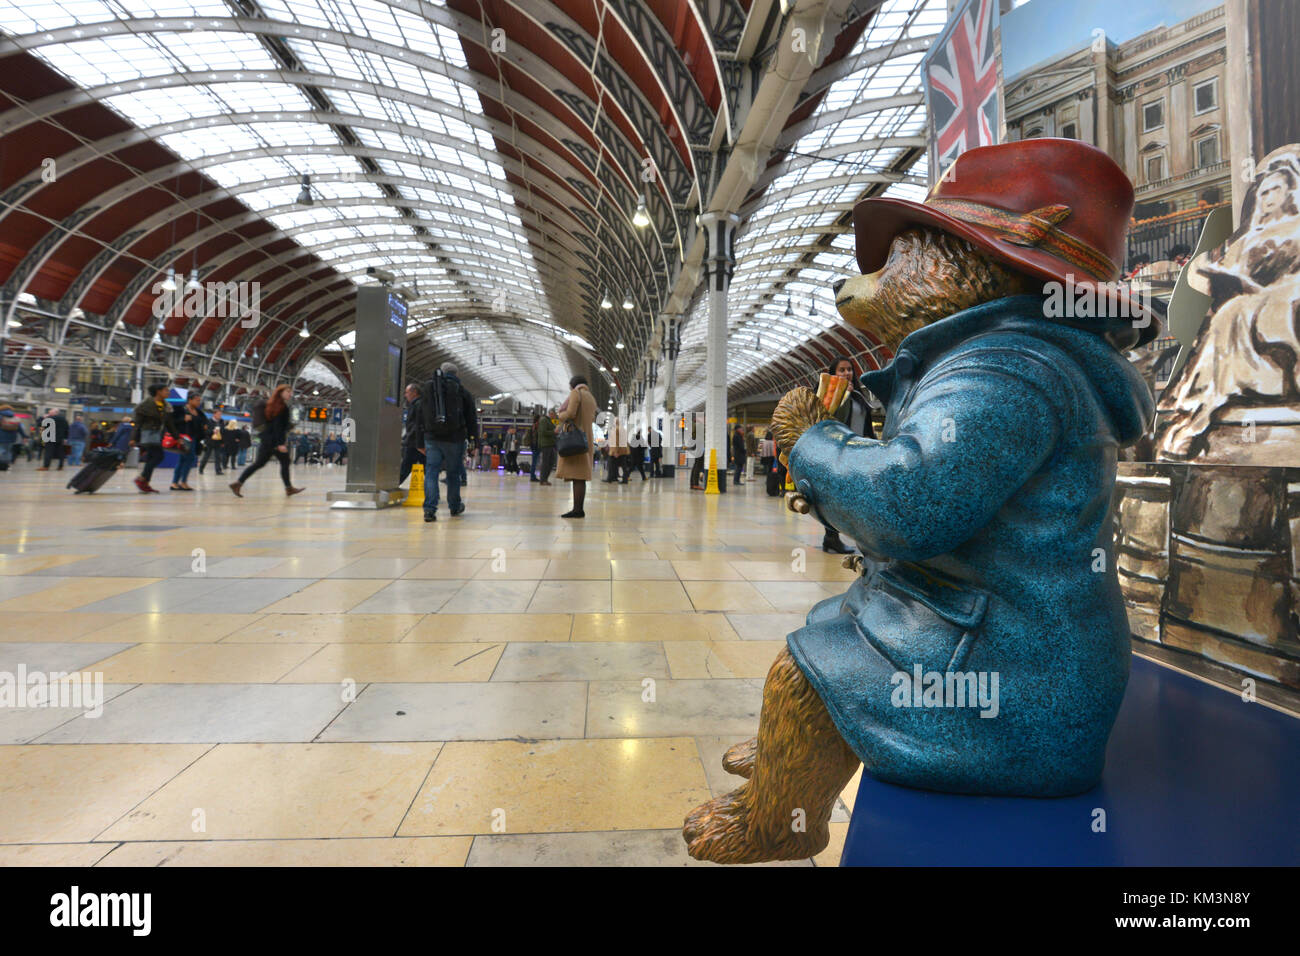 L'ours Paddington statue, la gare de Paddington, Londres Banque D'Images